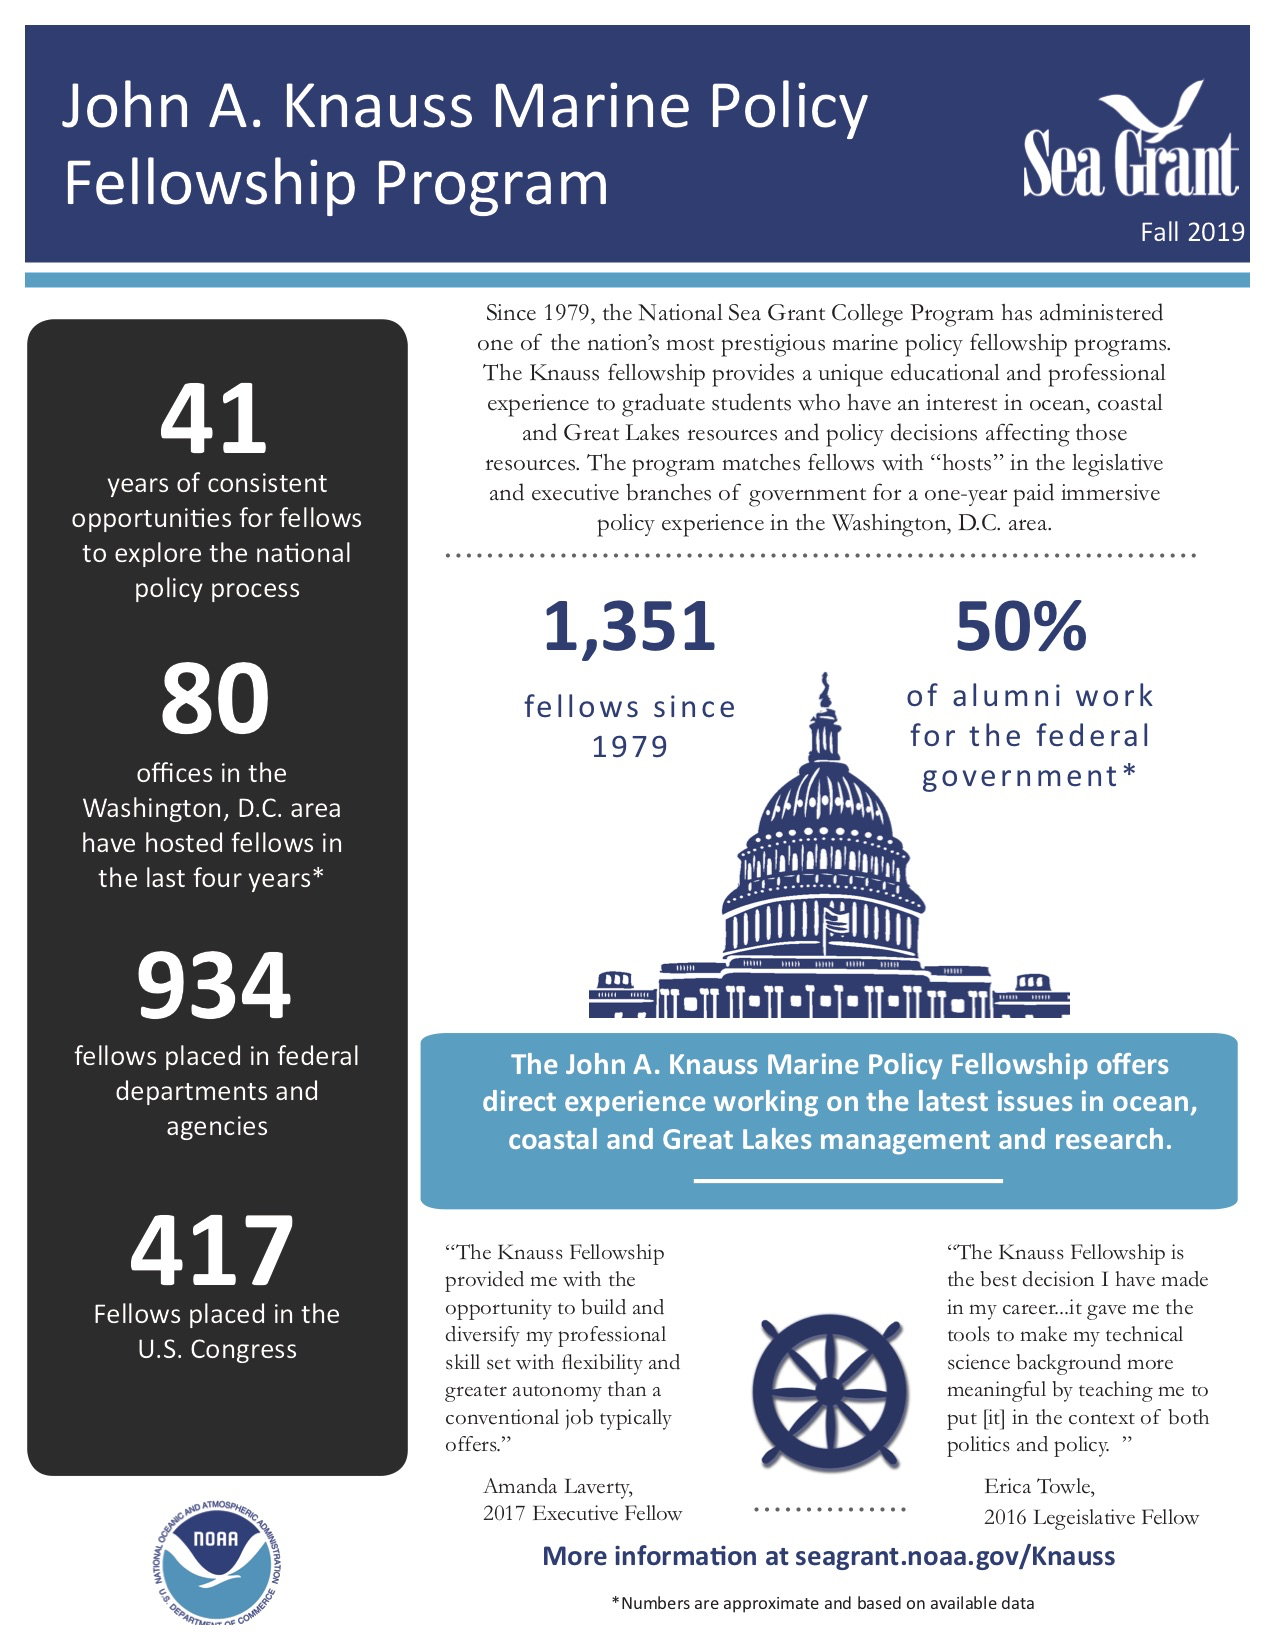 Fact sheet about the John A. Knauss Marine Policy Fellowship Program